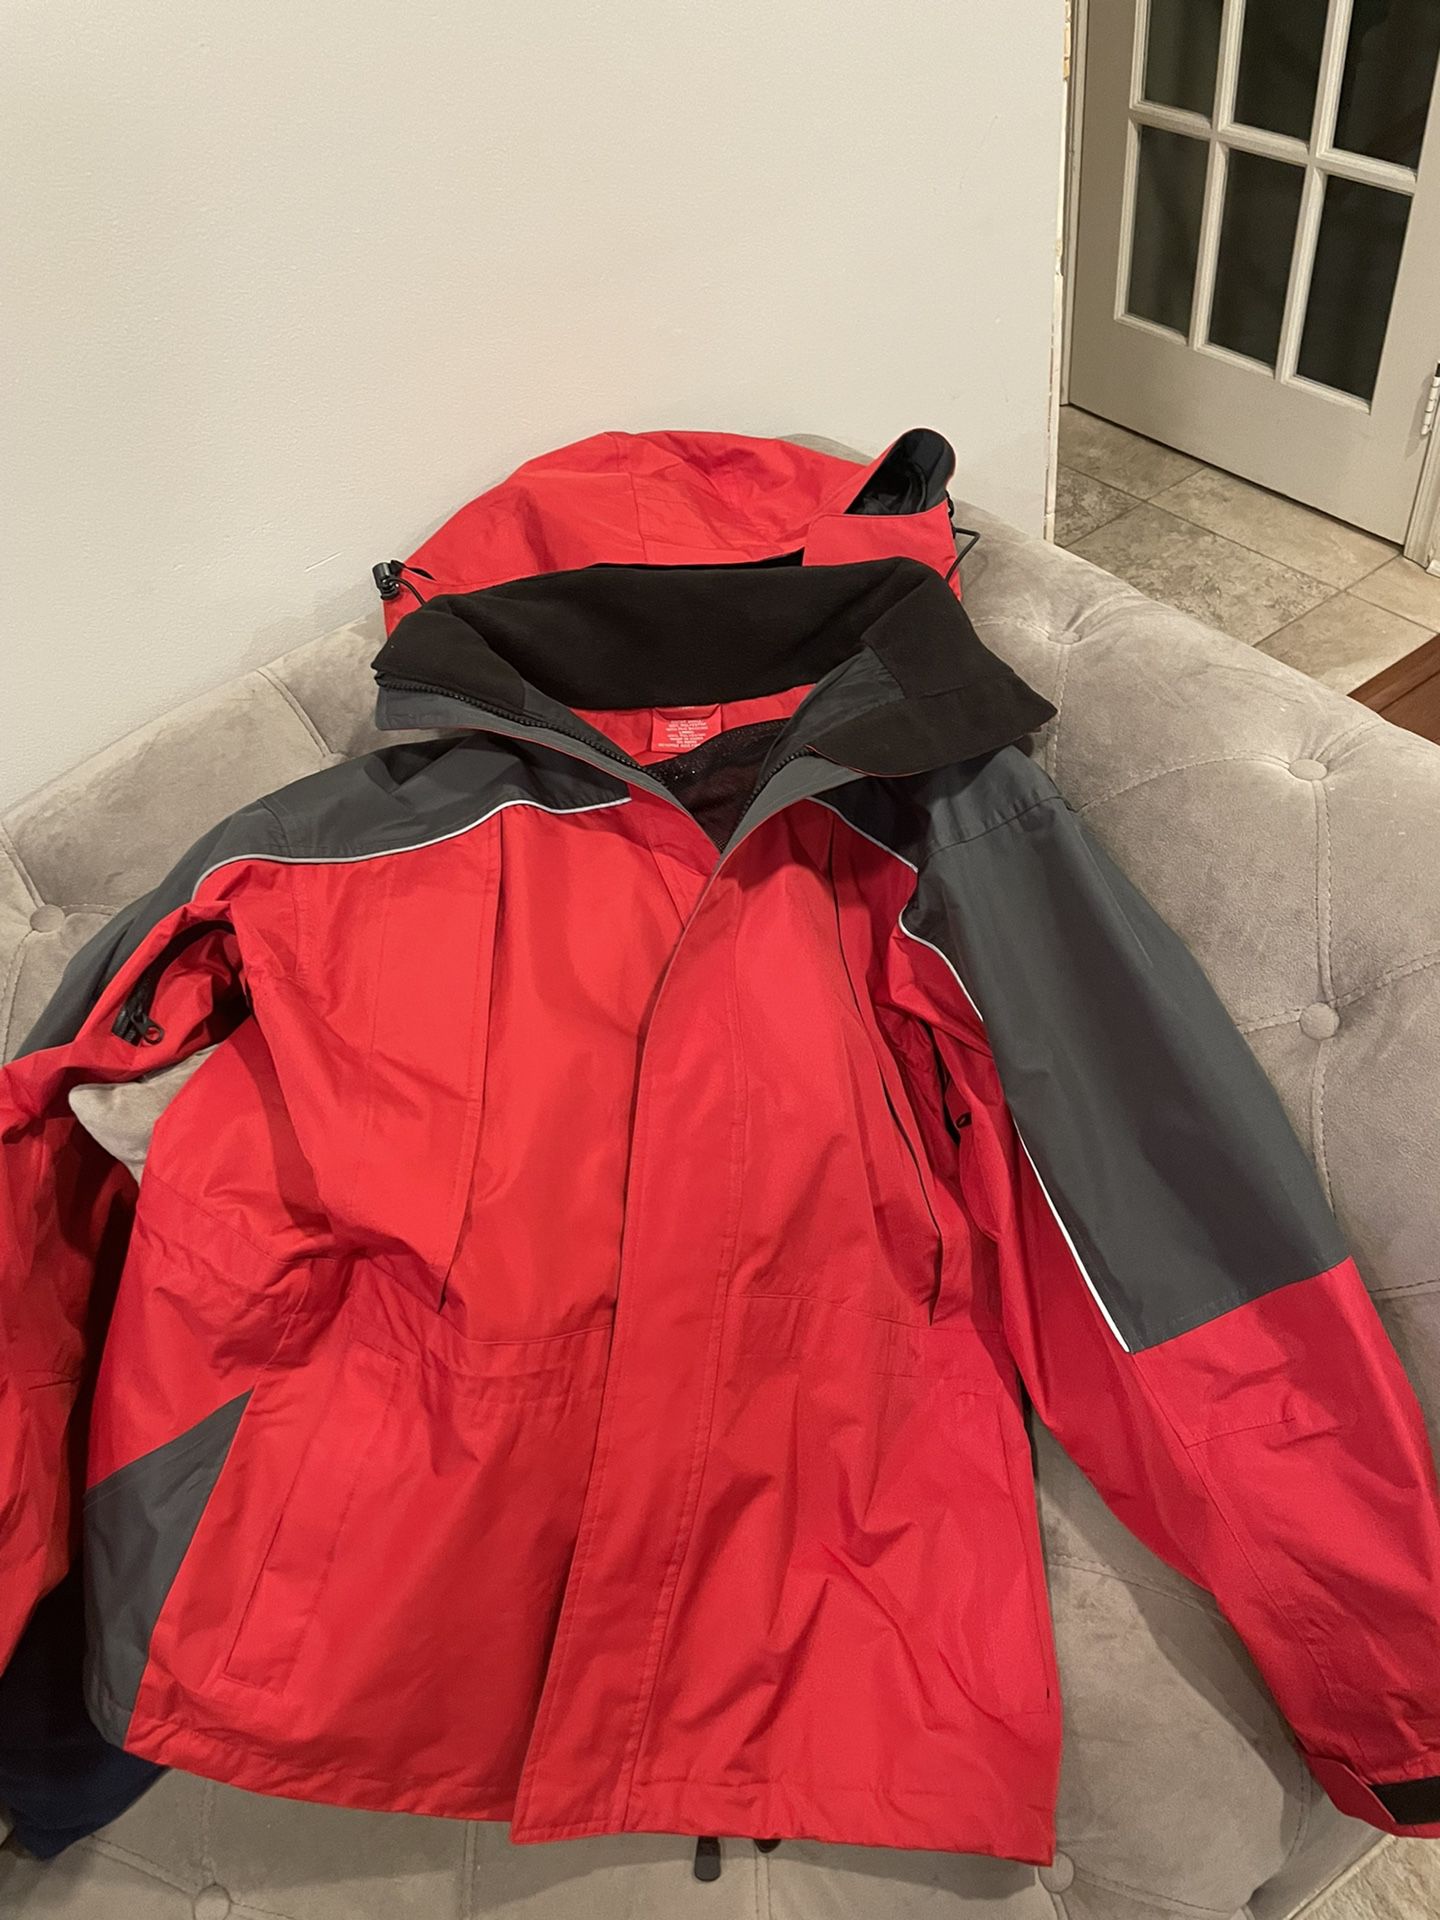 Waterproof Men’s Large Size Jacket